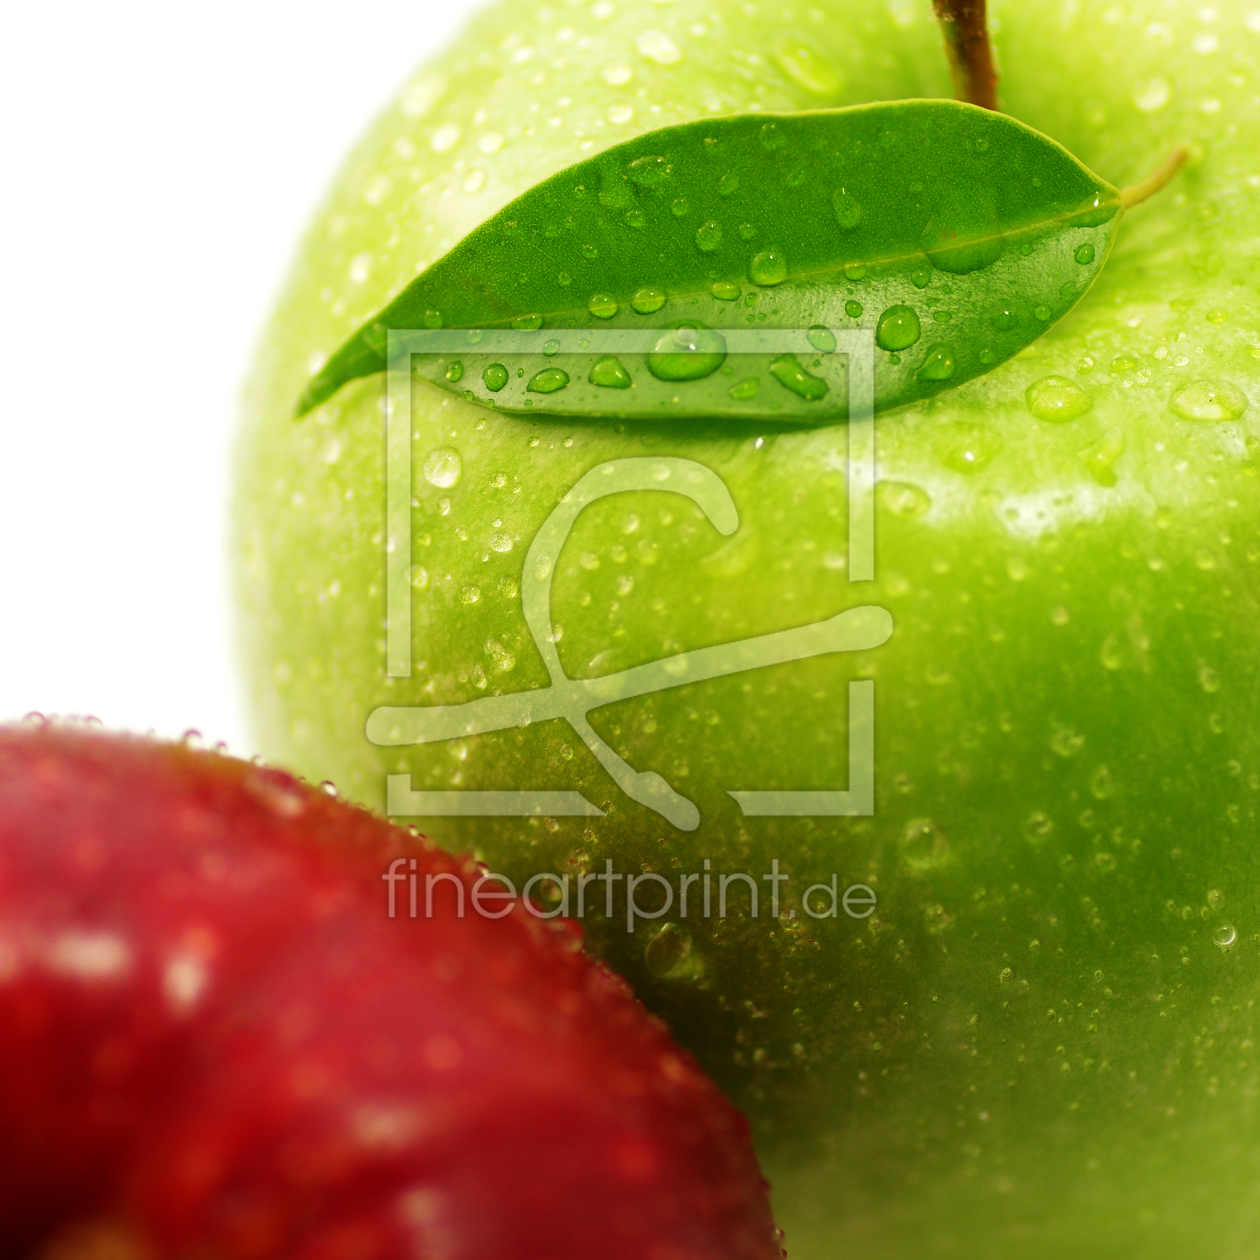 Bild-Nr.: 11118662 Frische Äpfel im Kontrast erstellt von Tanja Riedel